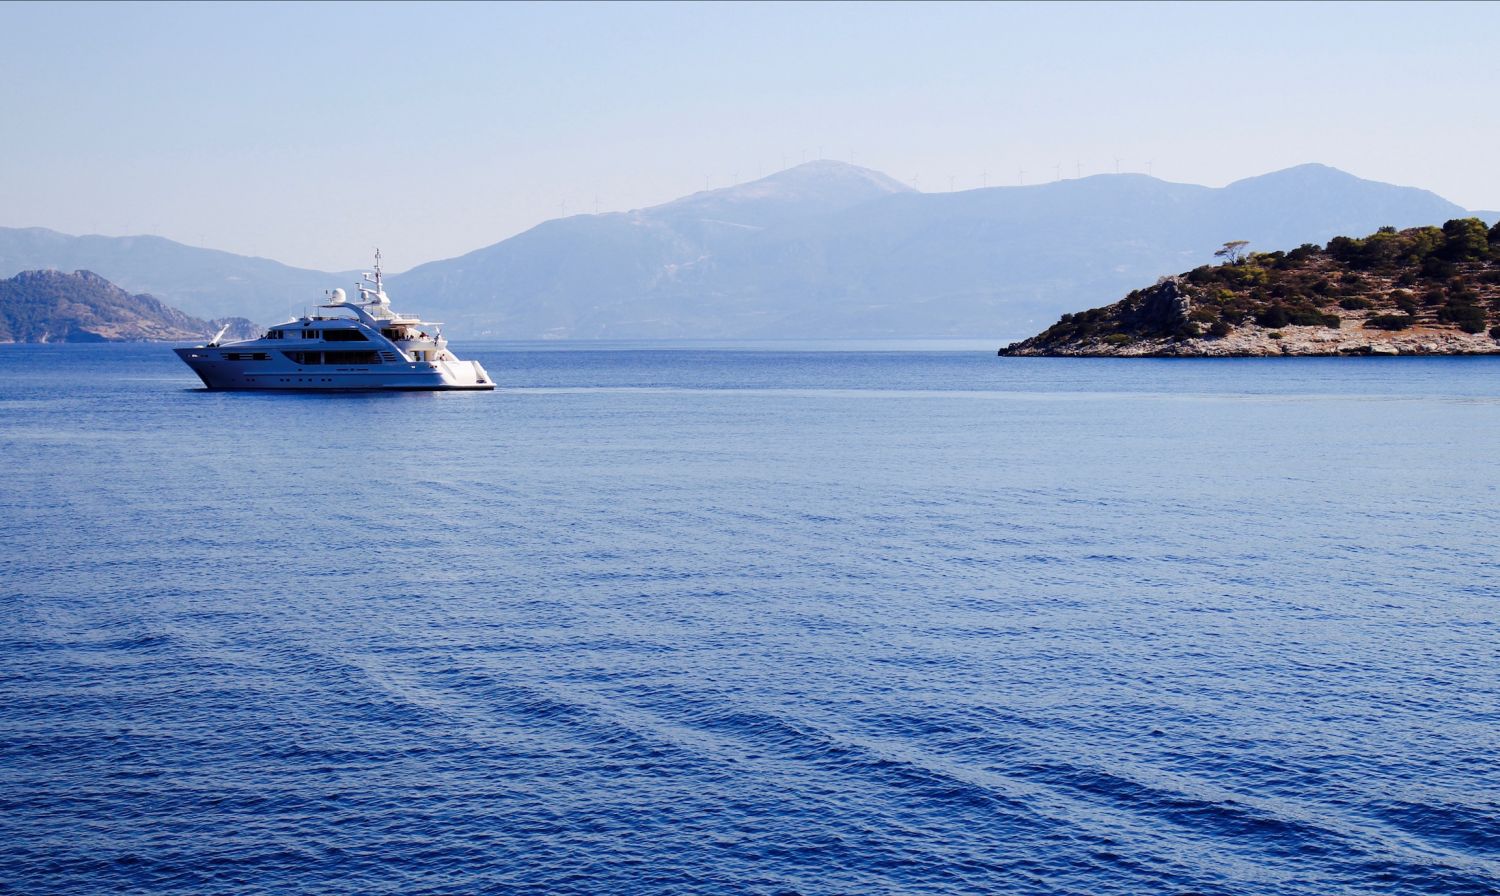 Όλα όσα πρέπει να γνωρίζεις για το πευκόφυτο τουριστικό νησί, που βρίσκεται μία ώρα από την Αθήνα! [photos] - Φωτογραφία 2